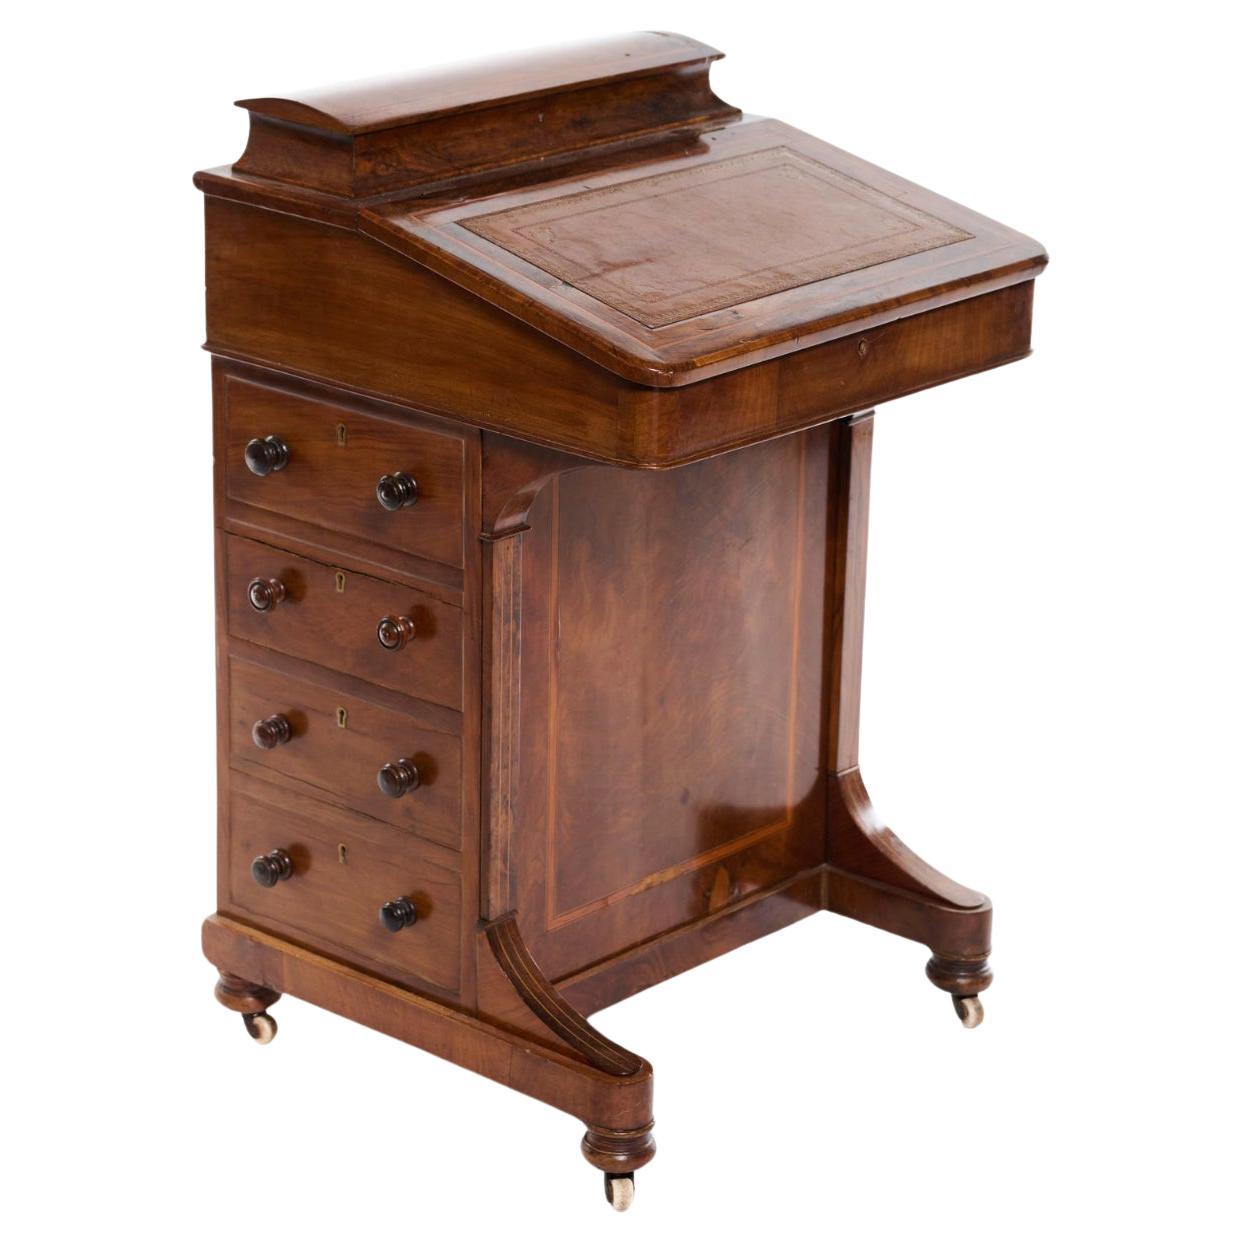 Handgeschnitzter Davenport-Schreibtisch aus Nussbaumholz aus dem 19. Jahrhundert, hergestellt in England